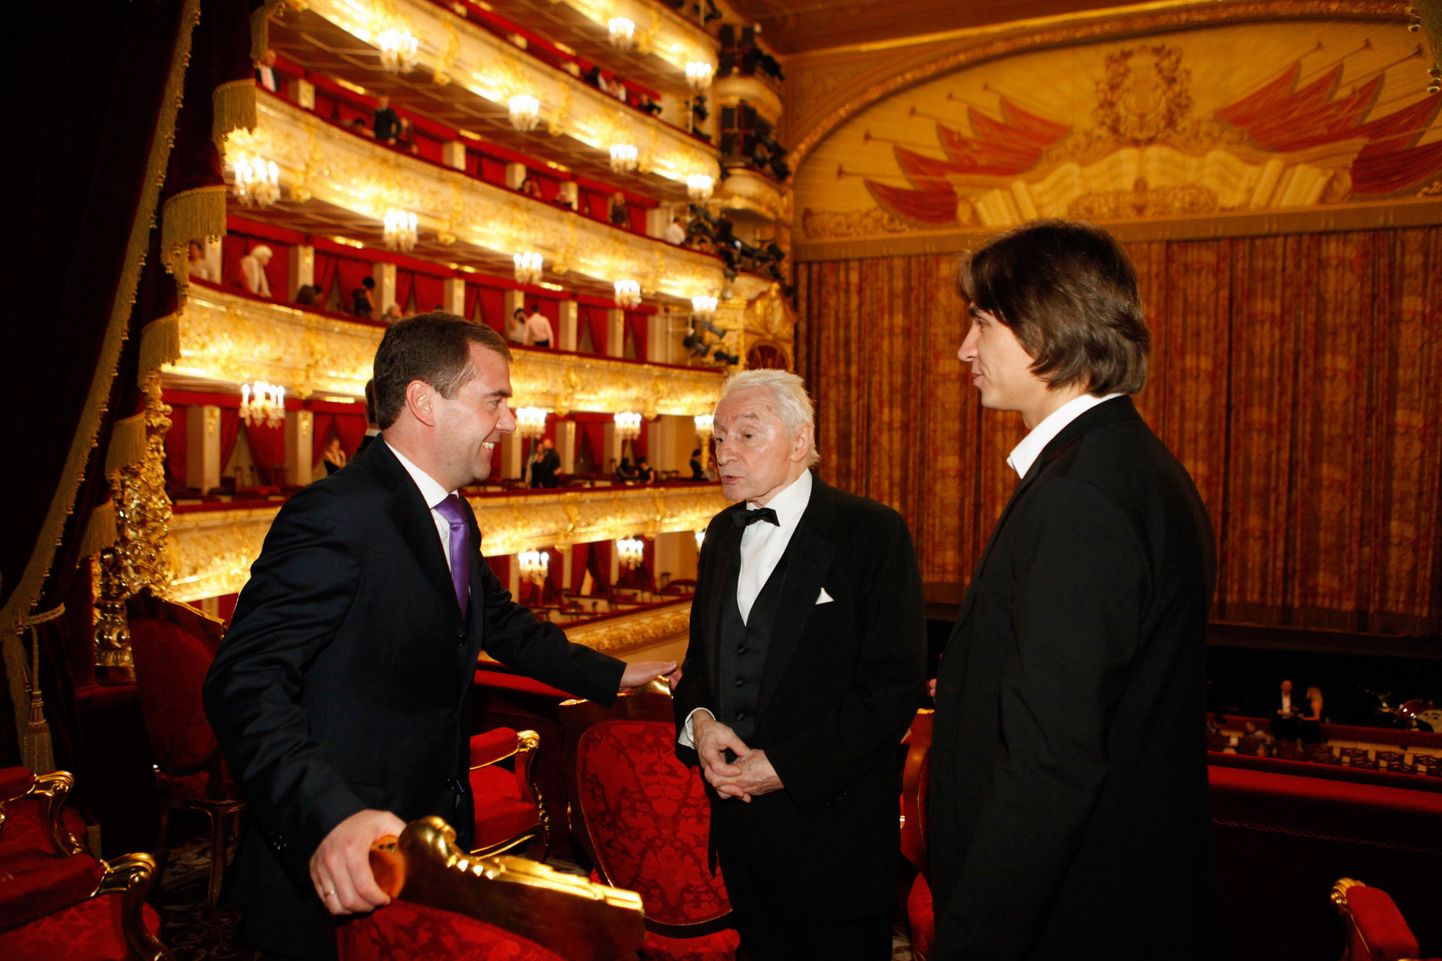 Aastal 2011 tehtud fotol vestleb Vene  president Dmitri Medvedev (vasakul) Suure Teatri koreograafi Juri Grigorovitši ja balletitrupi kunstilise juhi Sergei Filiniga (paremal).